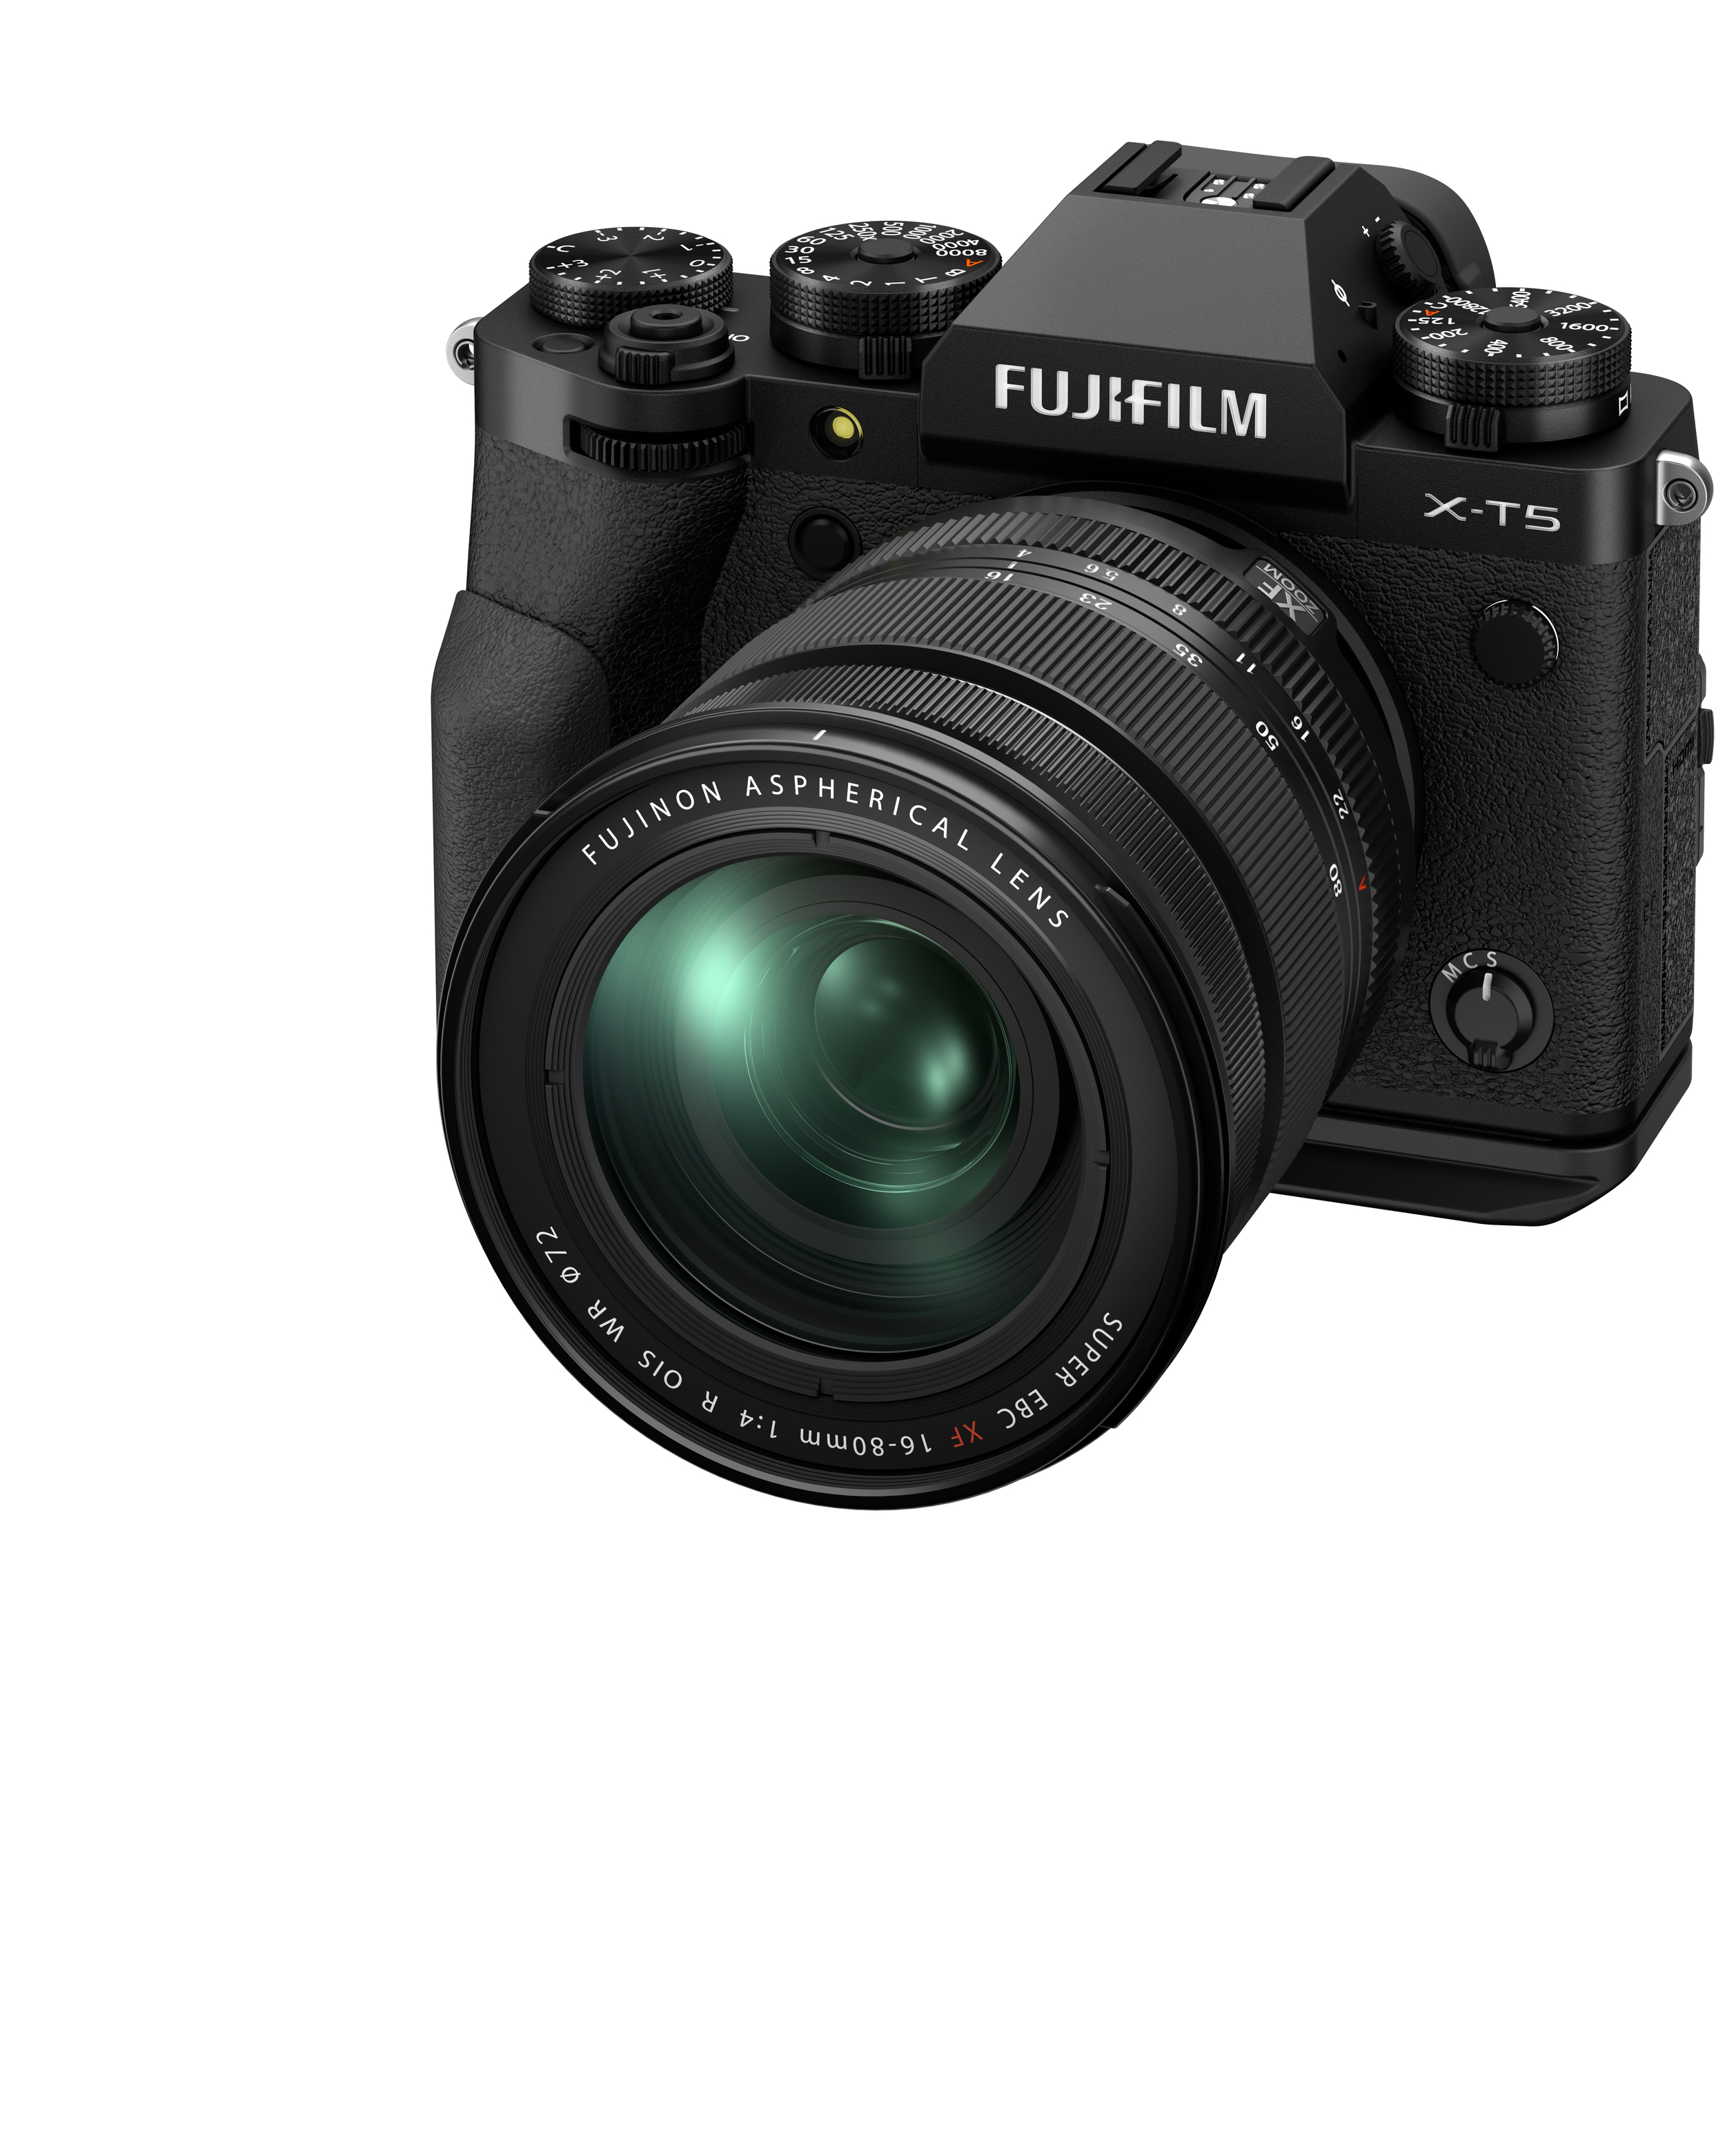 ฟูจิฟิล์ม ประเทศไทย เปิดตัวกล้อง FUJIFILM X T5 01 | FUJIFILM X-T5 | ฟูจิฟิล์มเปิดตัวกล้อง FUJIFILM X-T5 และเลนส์ Fujinon XF30mm F2.8 Macro